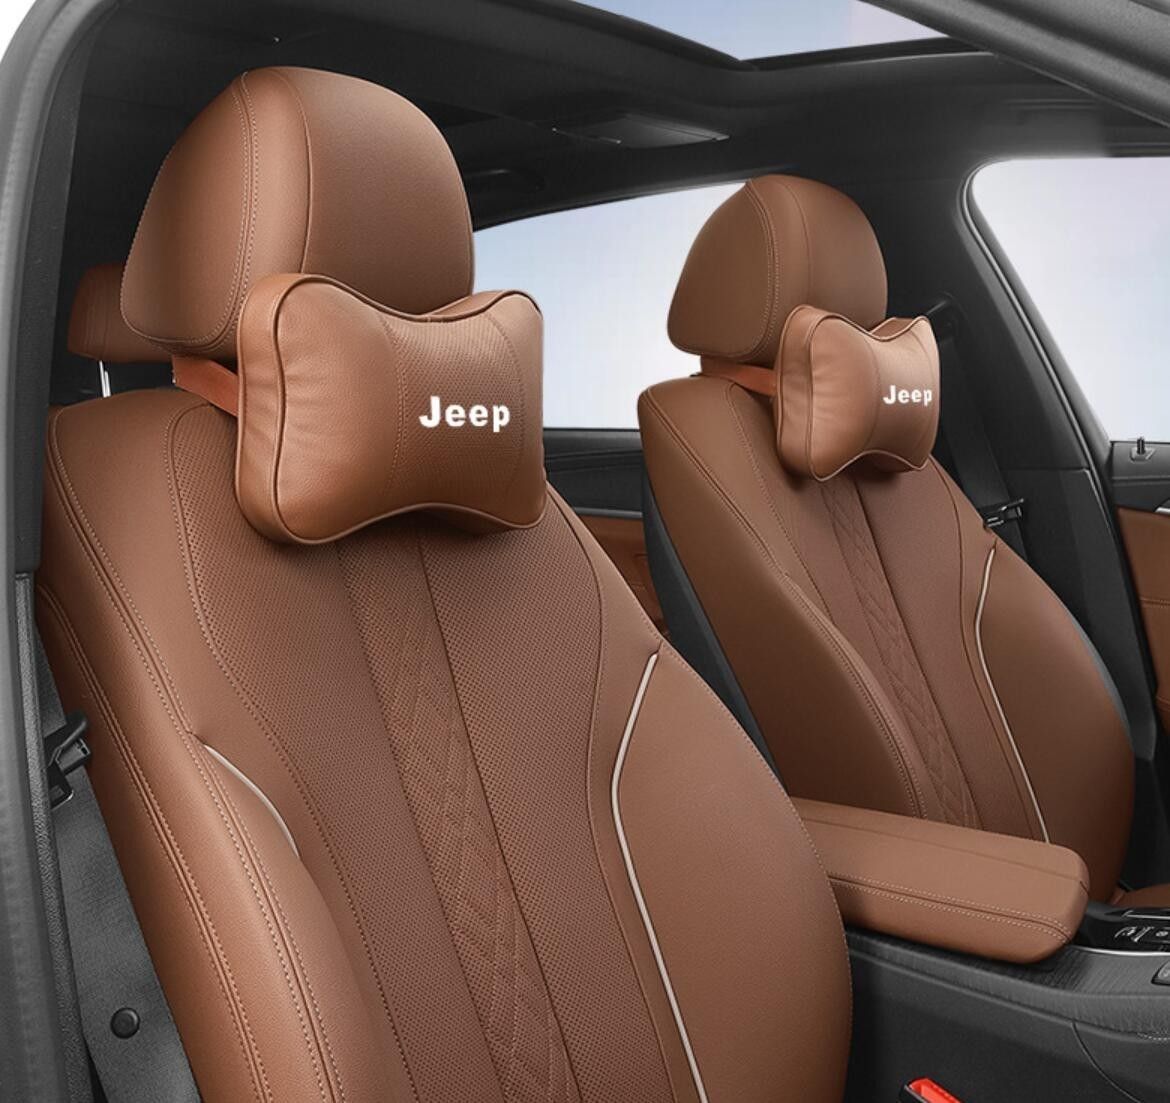 ジープ JEEP ロゴ入りき 車用記憶 通気性弾性 ネックパッド レザー ネックパッド 汎用 車載首枕 ヘッドレスト 2個 4色選択可 - メルカリ